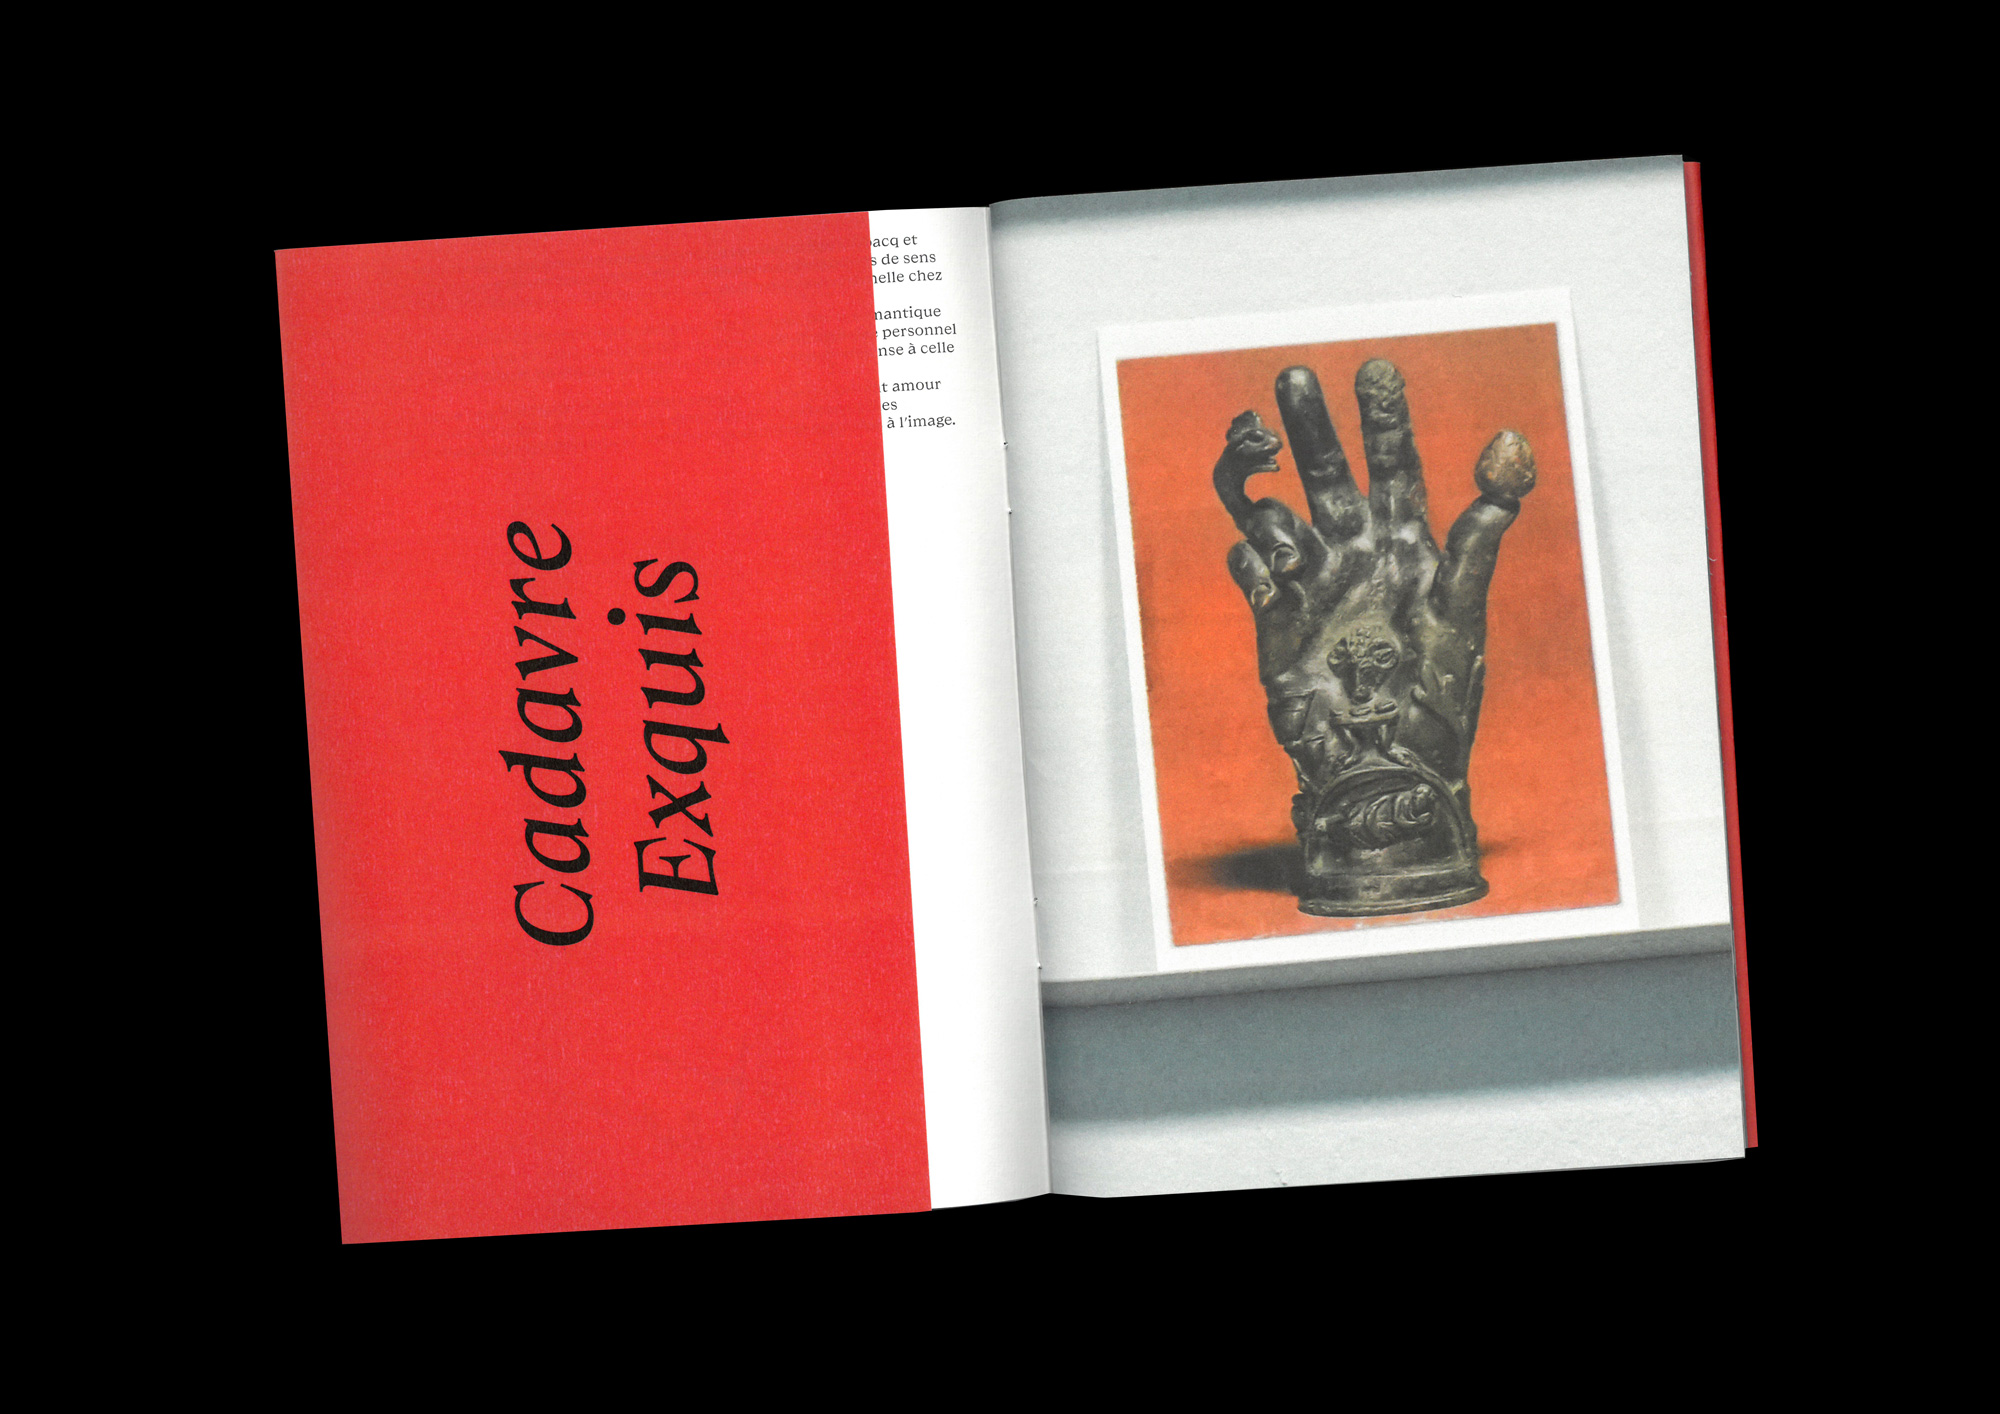 cadavre-exquis-pauline-hisbacq-september-books-visuel-2